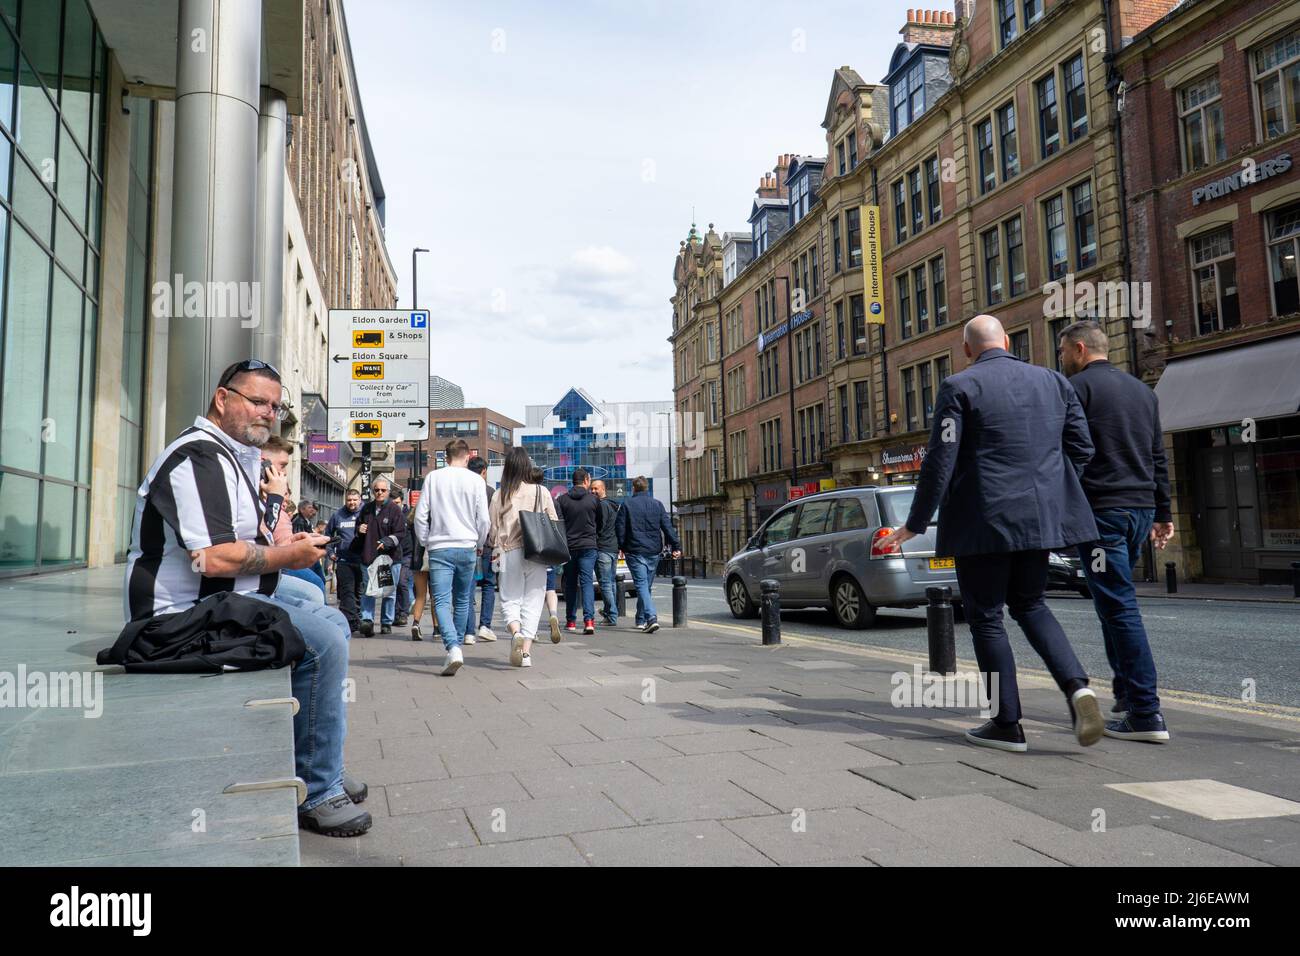 Des gens dans la rue à Gallowgate, Newcastle upon Tyne, Royaume-Uni Banque D'Images